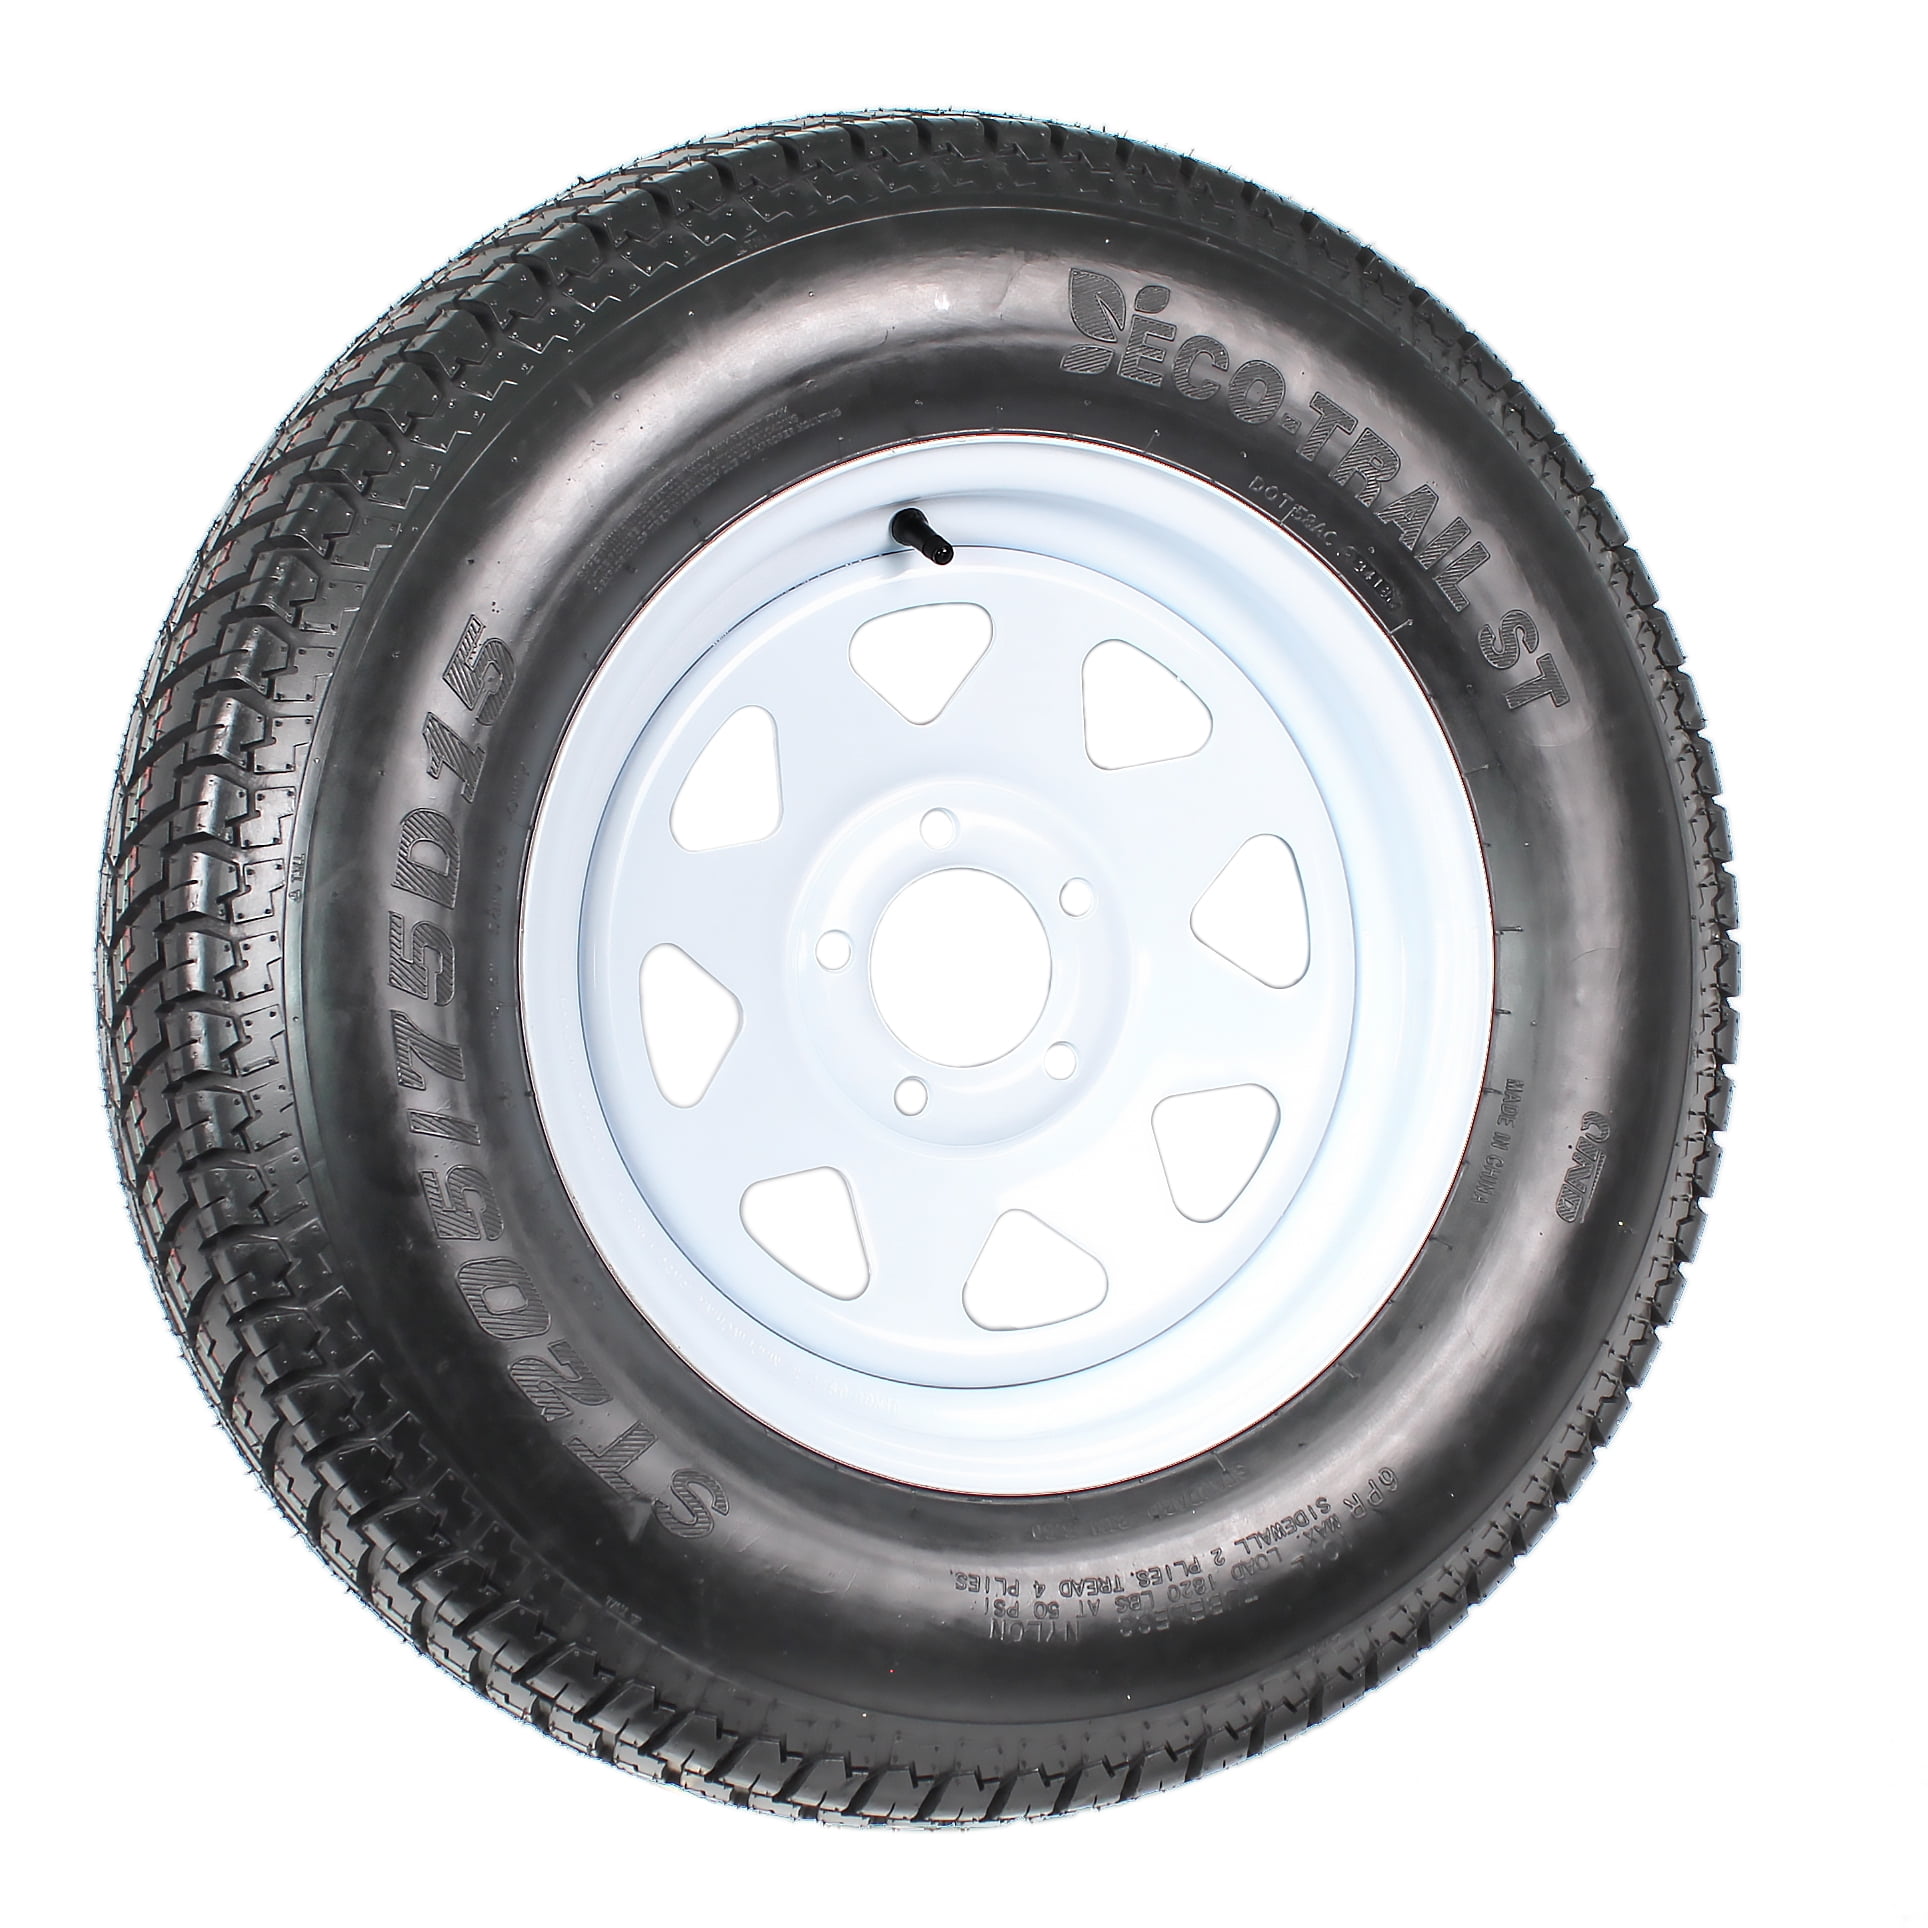 Motorhot 2x 15 White Spoke Bias Trailer Tire Wheel ST205/75D15 6 Ply LRC Tires Mounted 5x4.5 bolt circle 